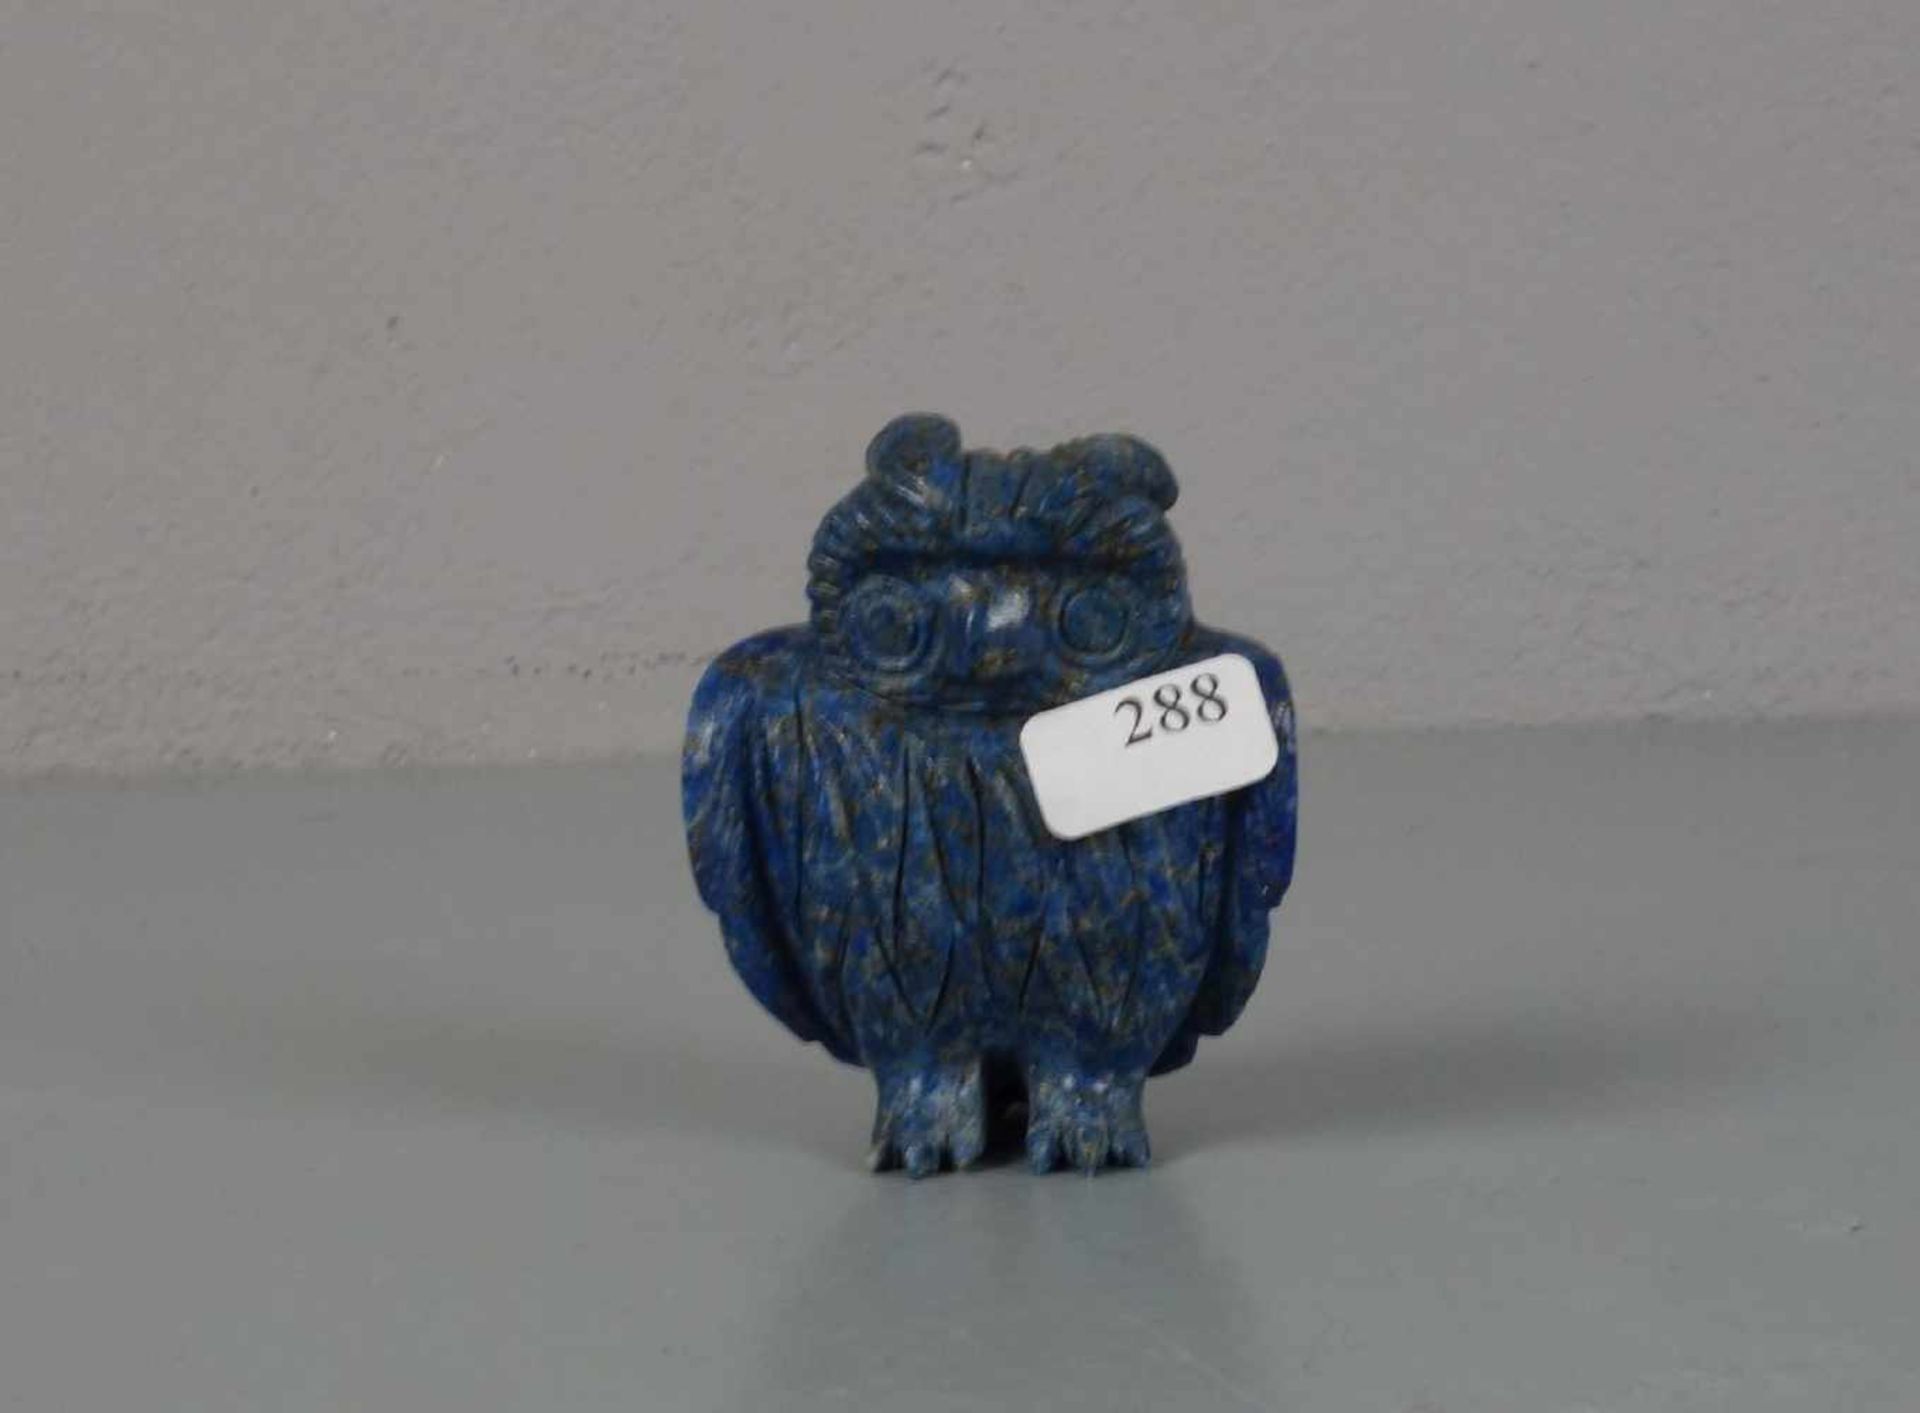 TIERFIGUR / ZIEROBJEKT: Edelstein-Eule / gemstone owl figure, wohl 20. Jh., ungemarkt, geschnitzt,